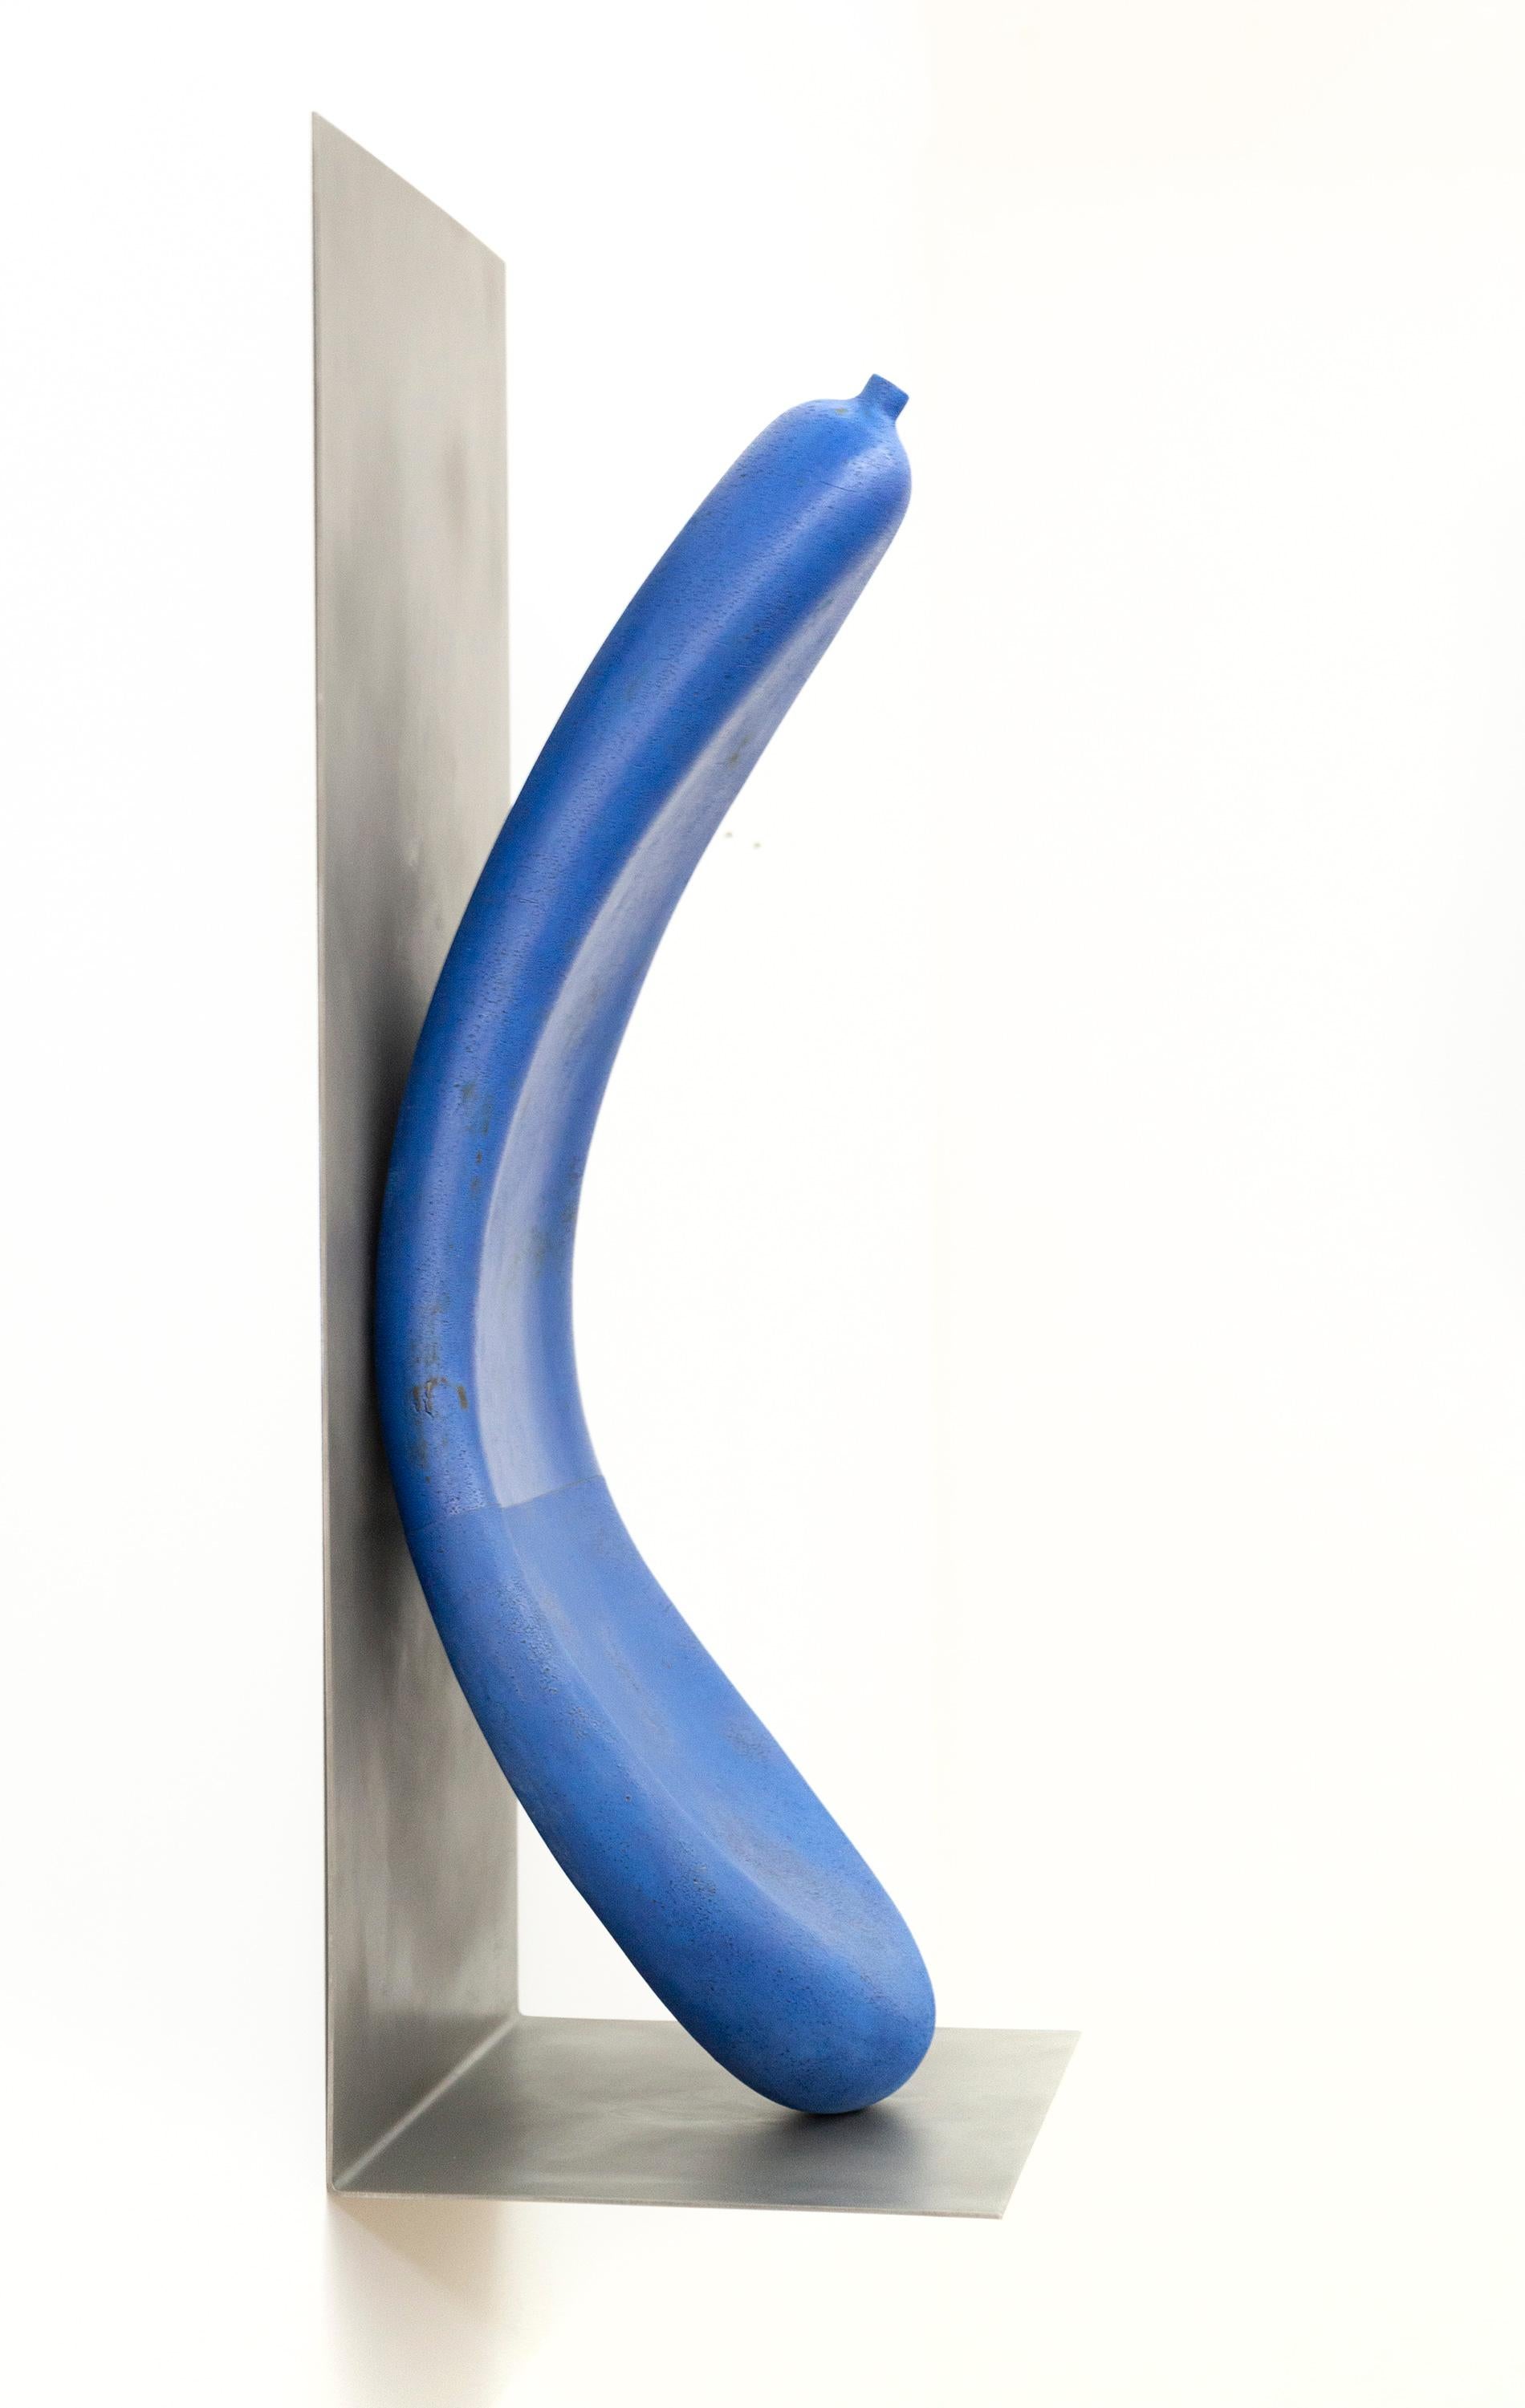 letsgoawayforawhile - playful, blue, abstract, elongated, ceramic wall sculpture - Abstract Sculpture by Steven Heinemann